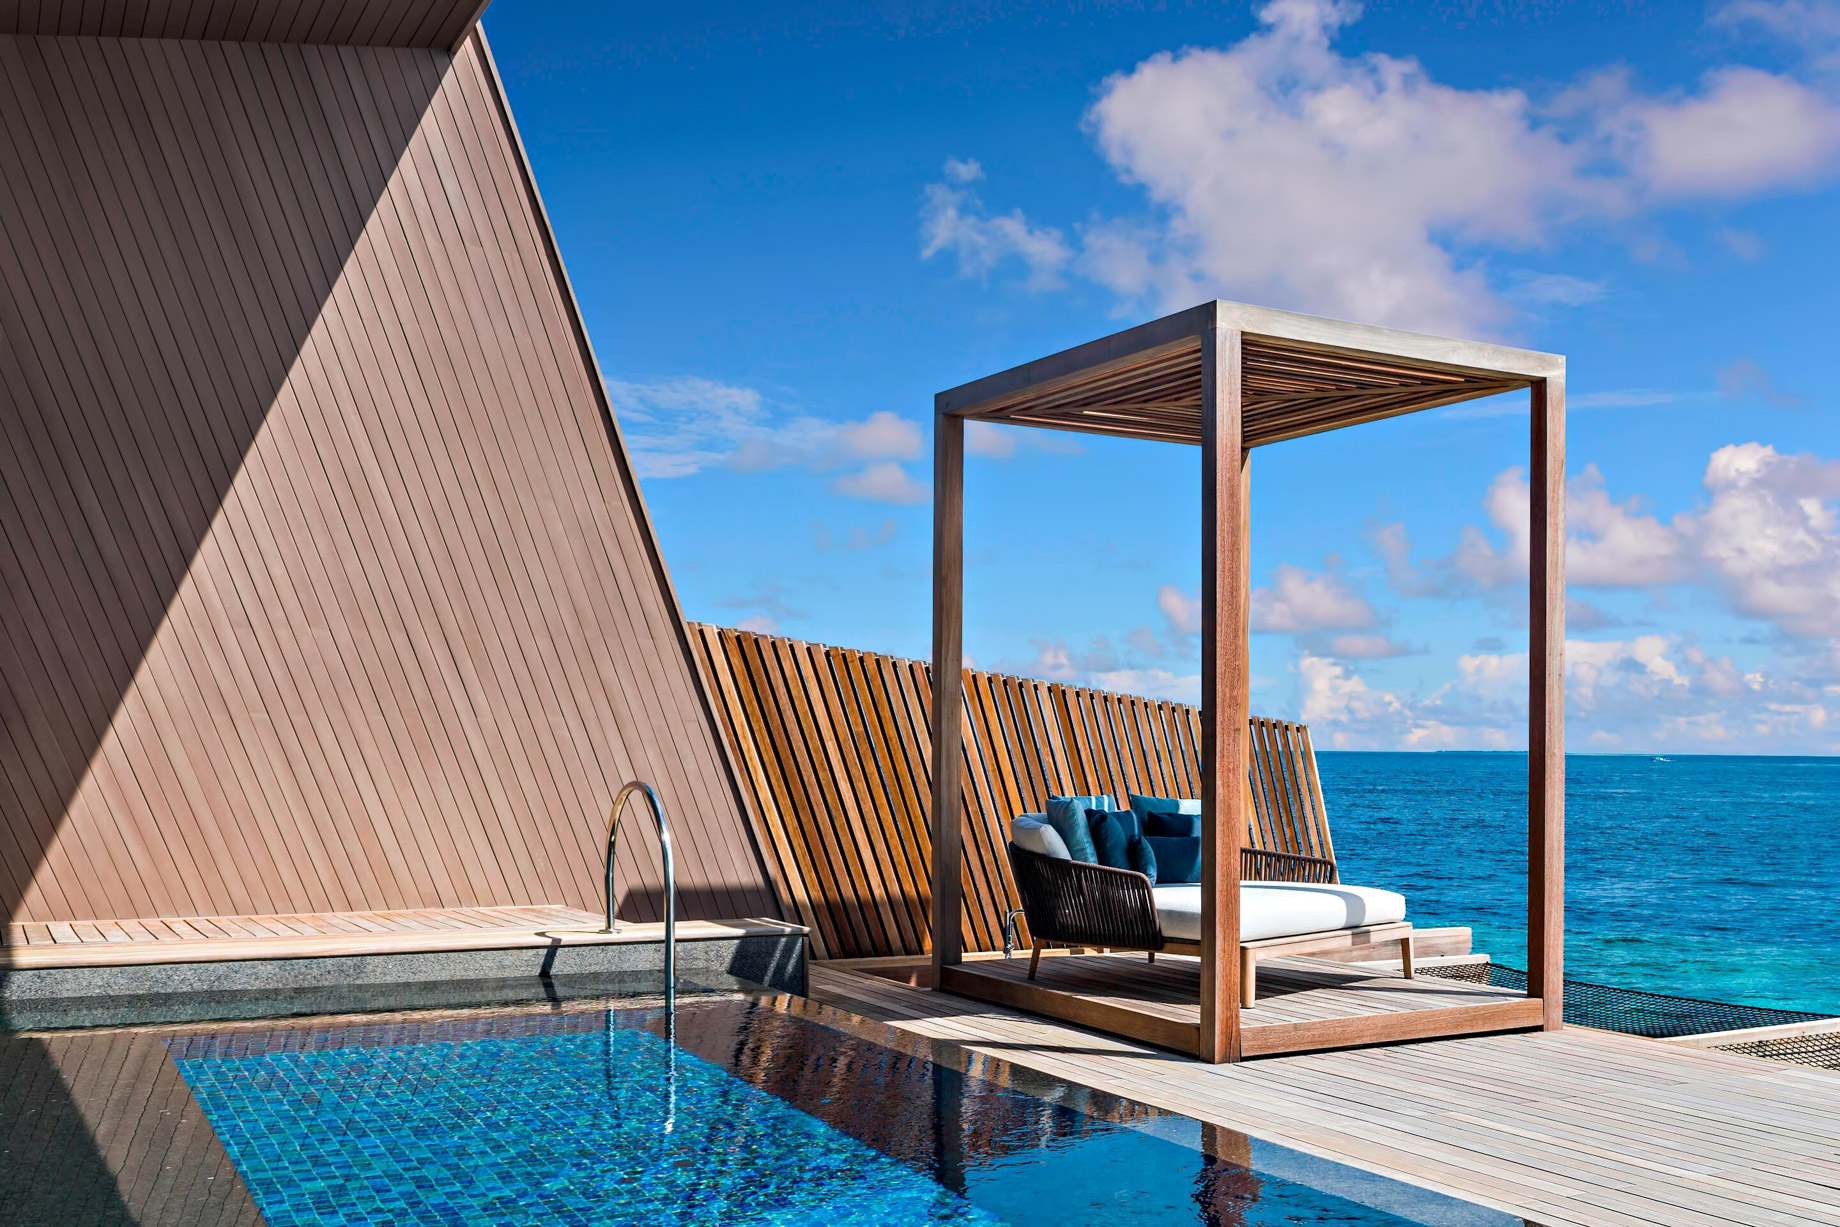 The St. Regis Maldives Vommuli Resort – Dhaalu Atoll, Maldives – St. Regis Overwater Suite Cabana